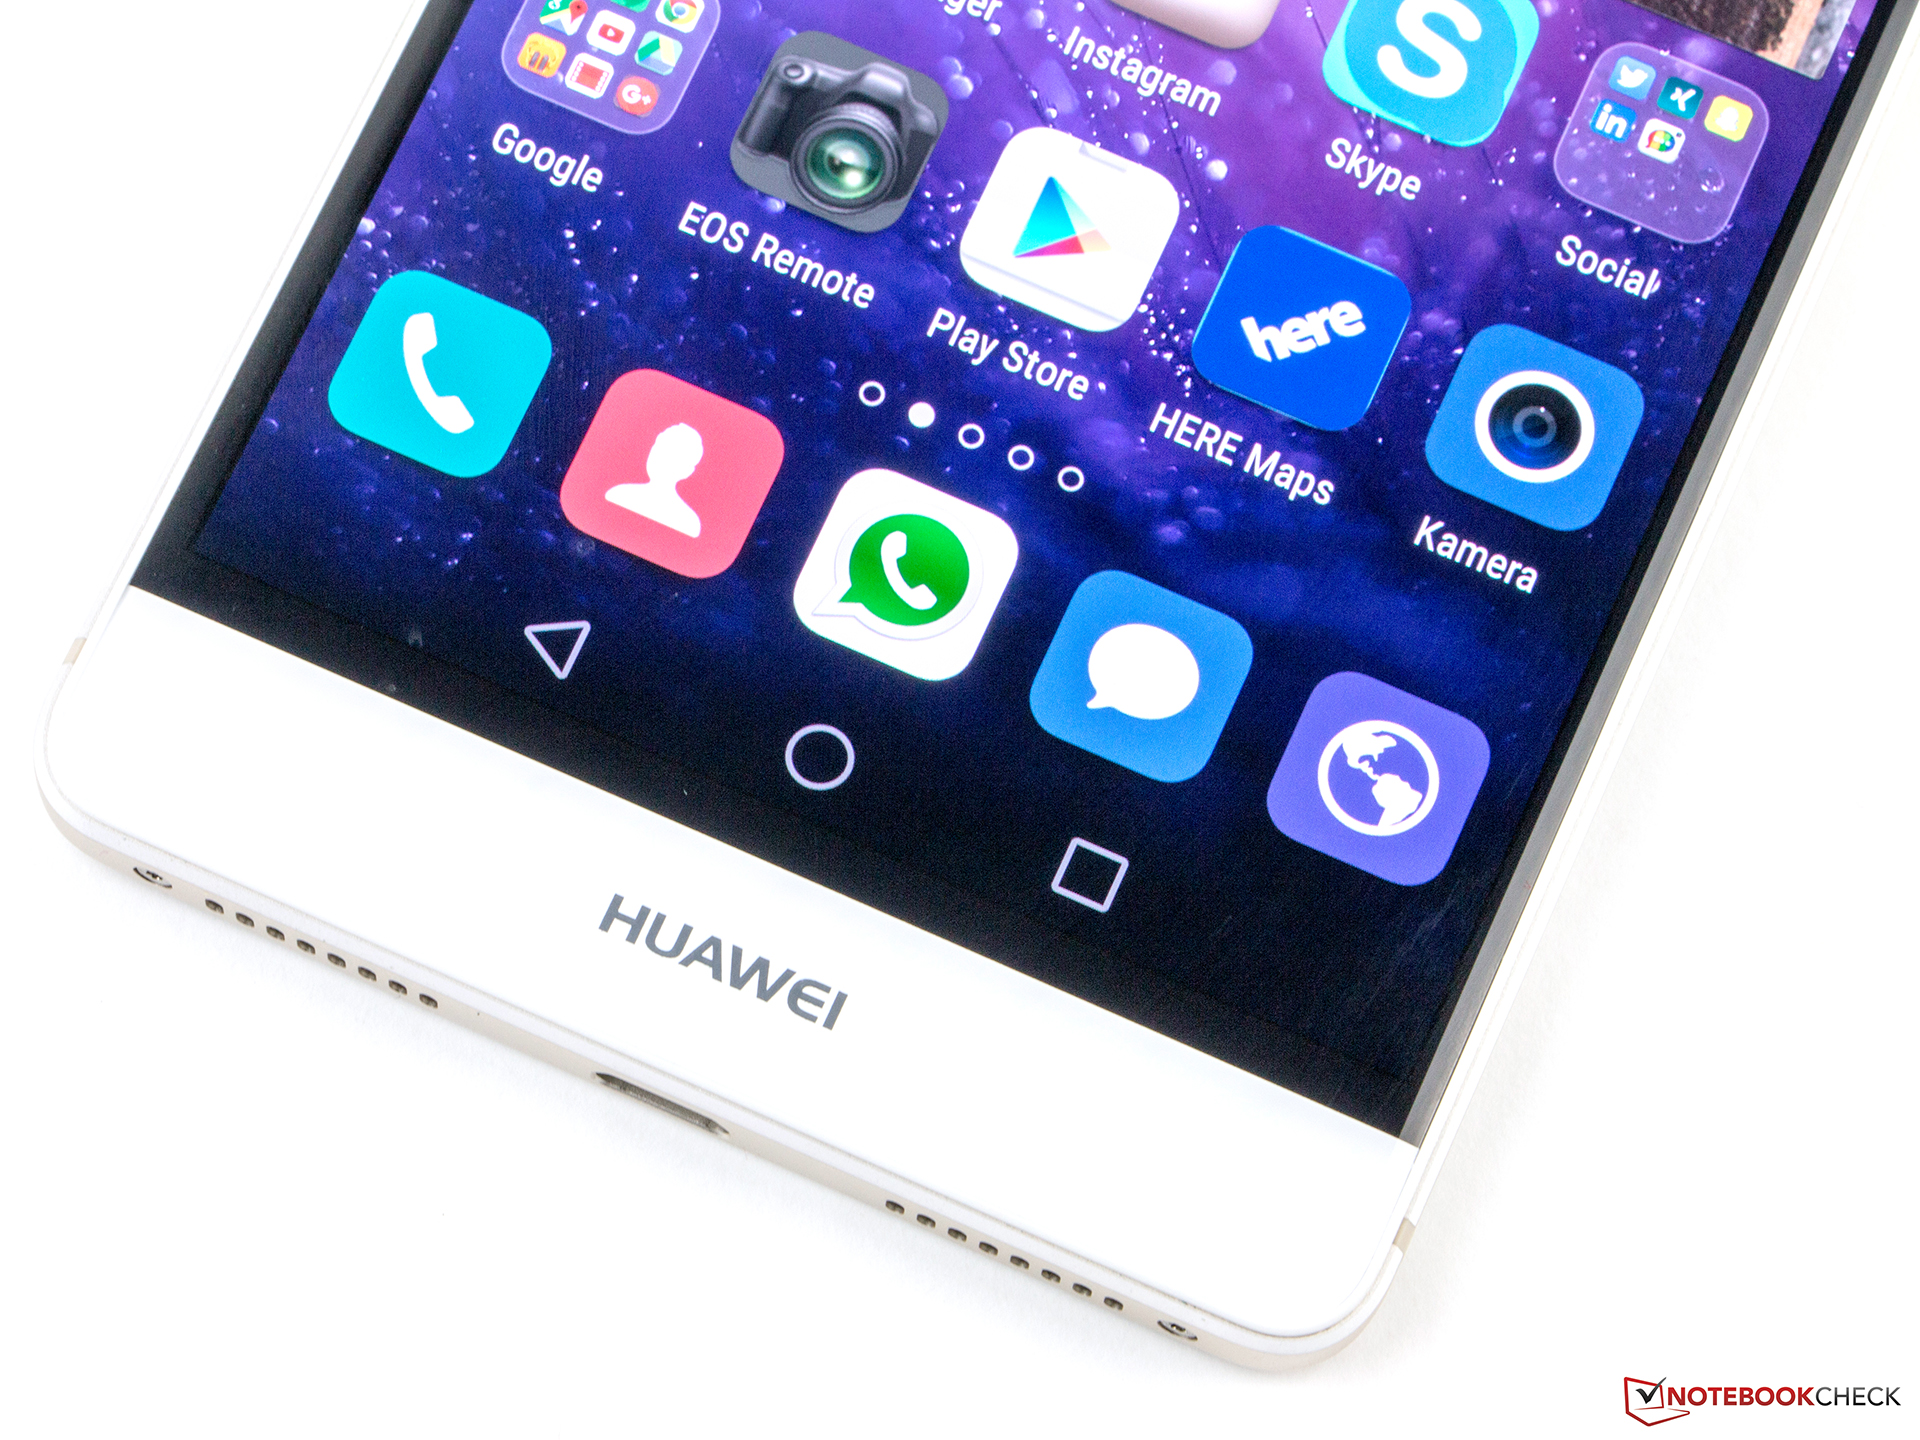 hoek Fahrenheit kreupel Huawei Mate S Smartphone Review - NotebookCheck.net Reviews